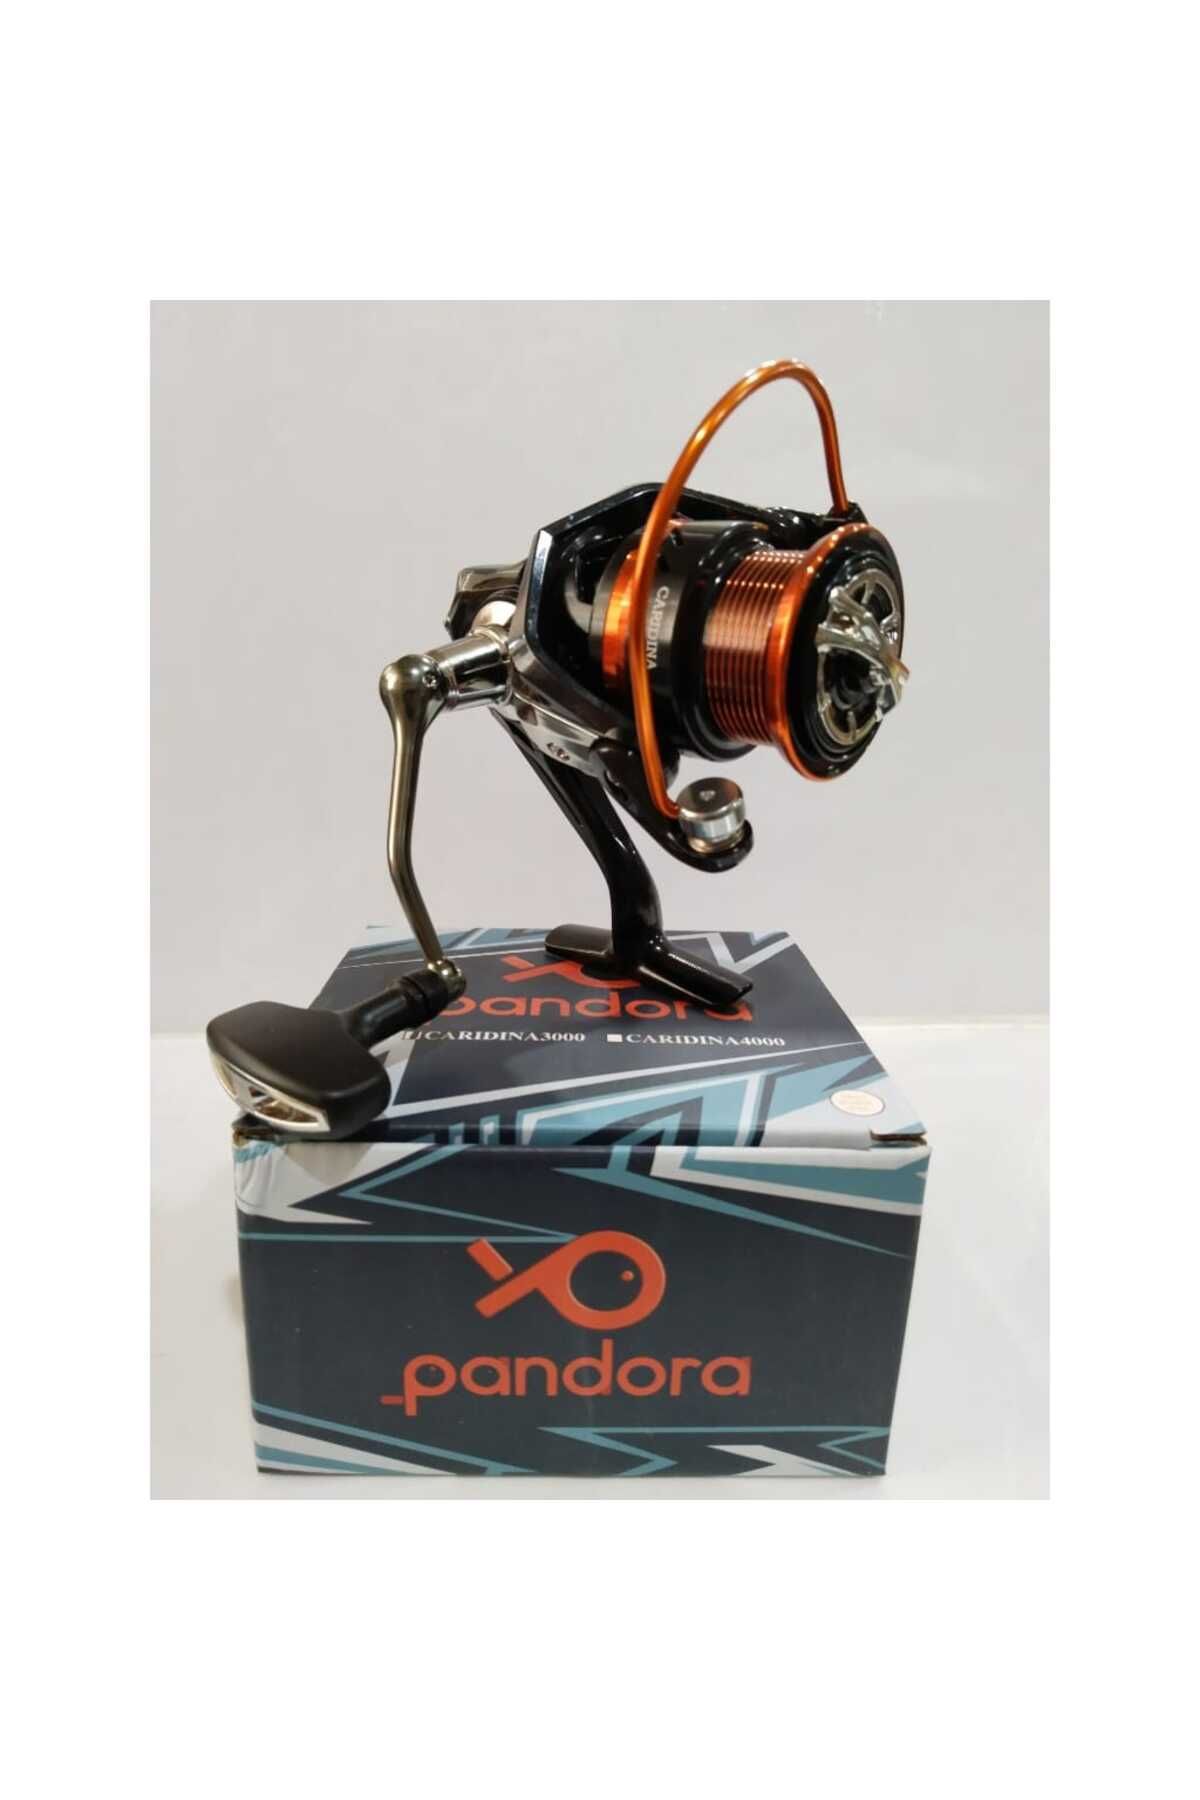 Pandora Caridina 3000 Olta Makinası 5+1 Bilyalı